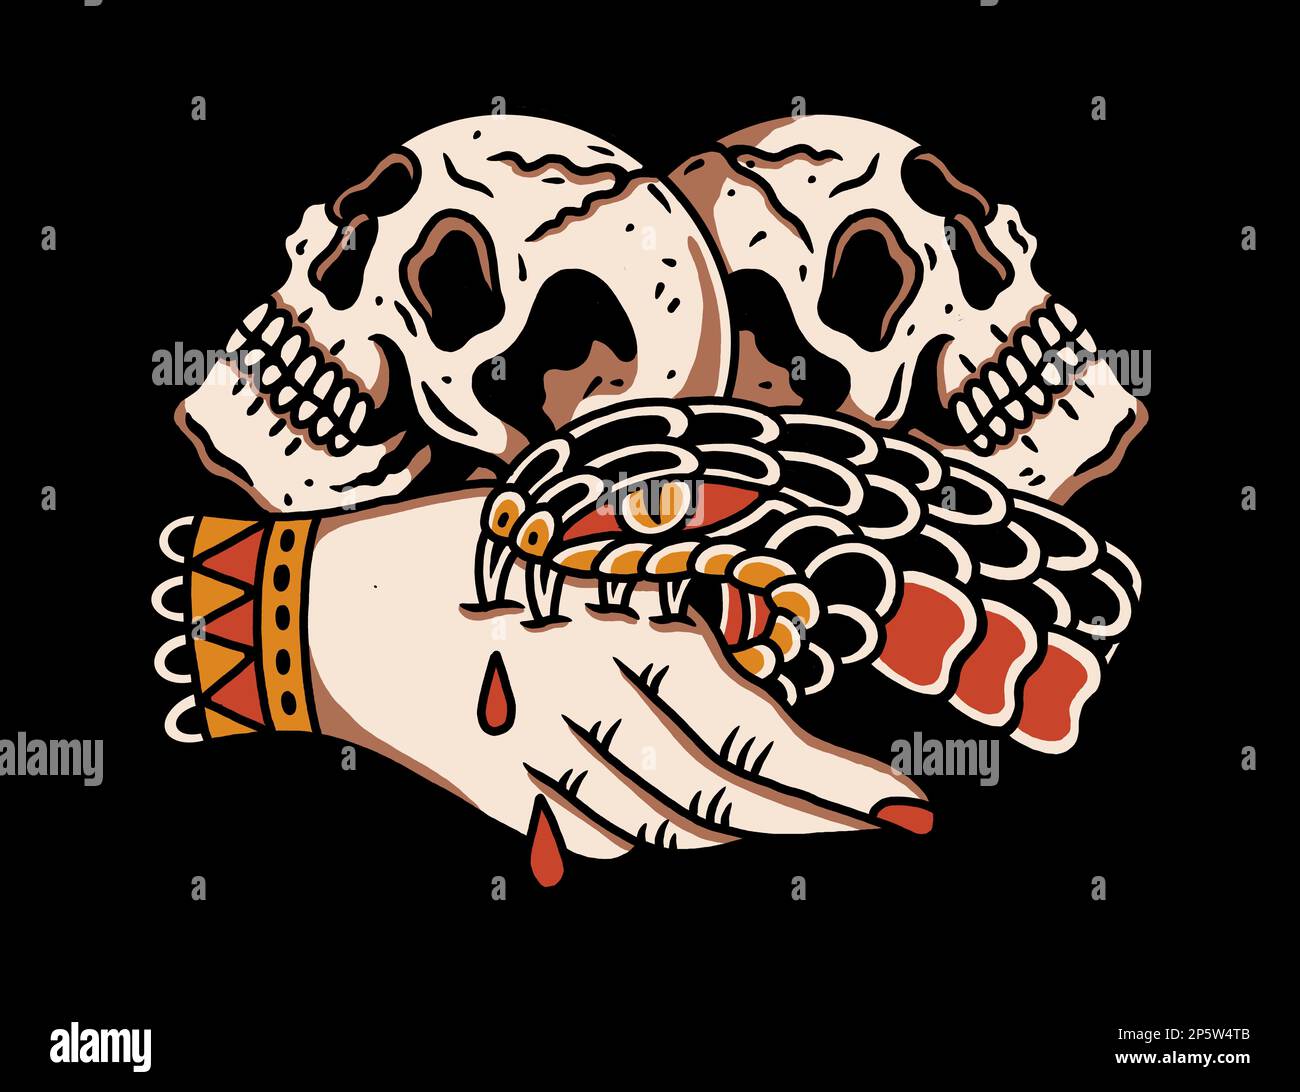 Traditionelles Tattoo-inspiriertes Grafikdesign auf schwarzem Hintergrund Schlange beißt Hand mit Schädeln im Hintergrund und vertraut niemandem Stockfoto